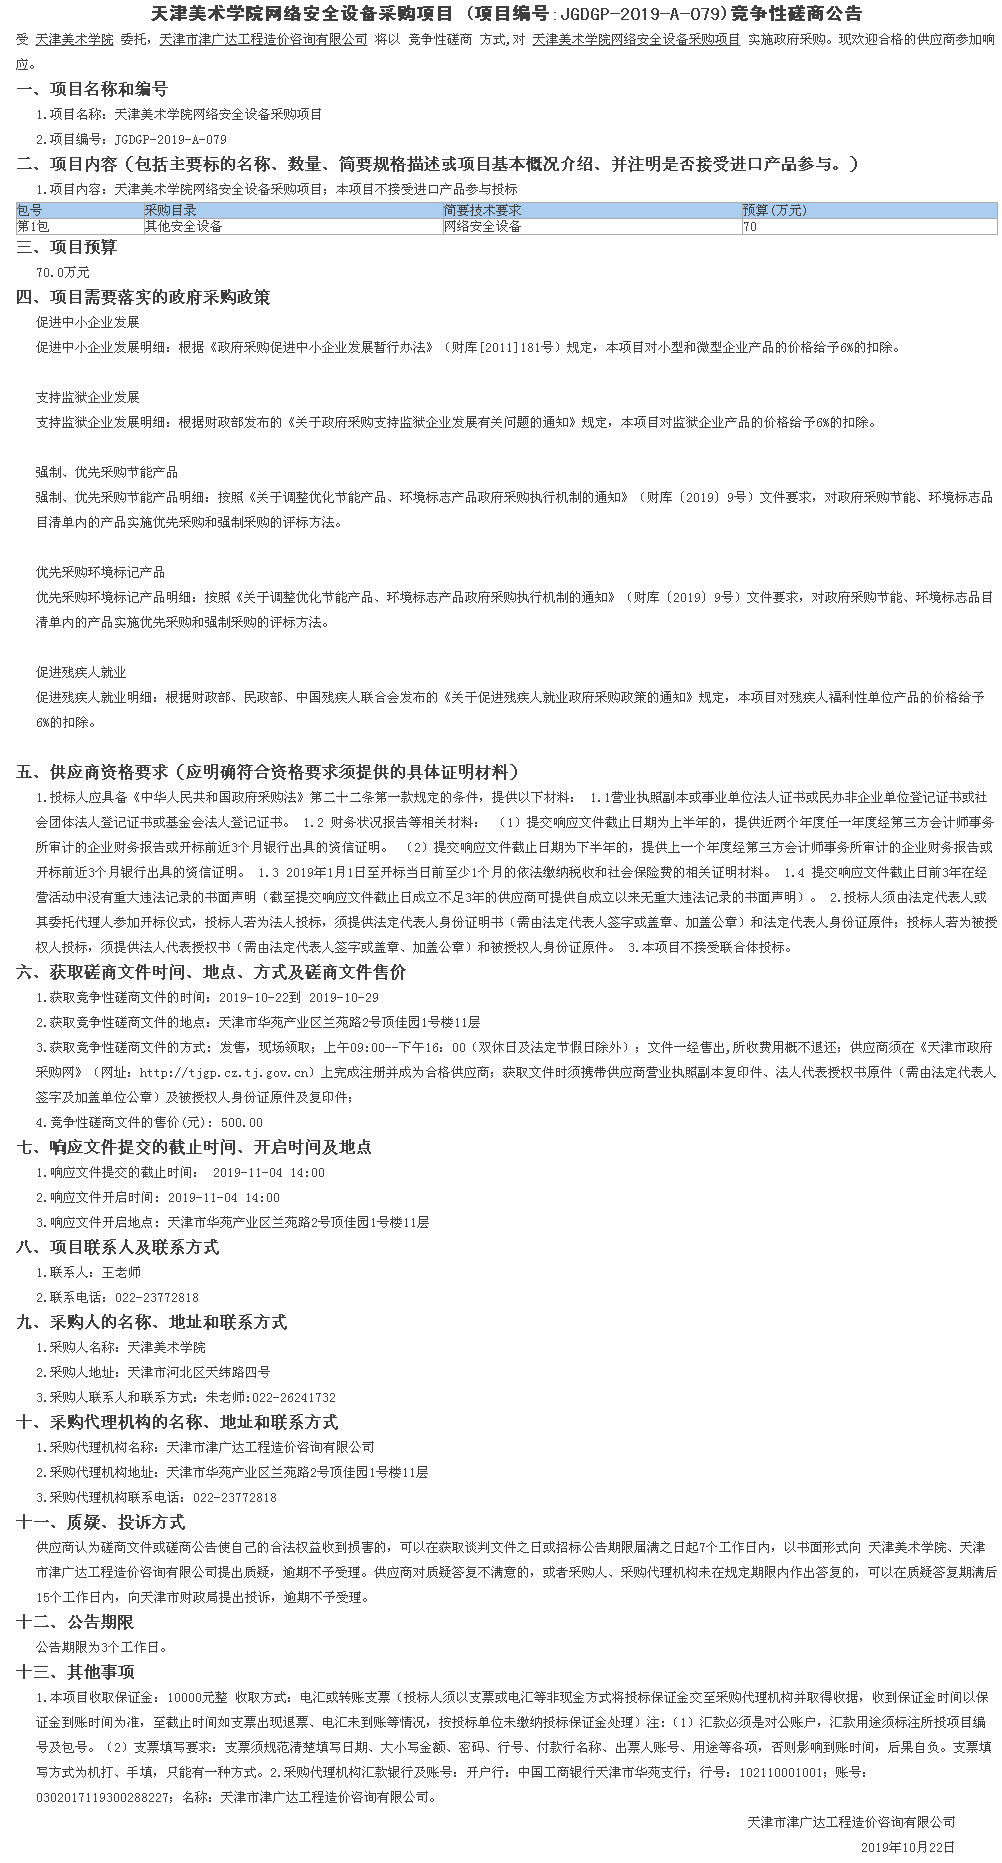 天津美术学院网络安全设备采购项目(图1)